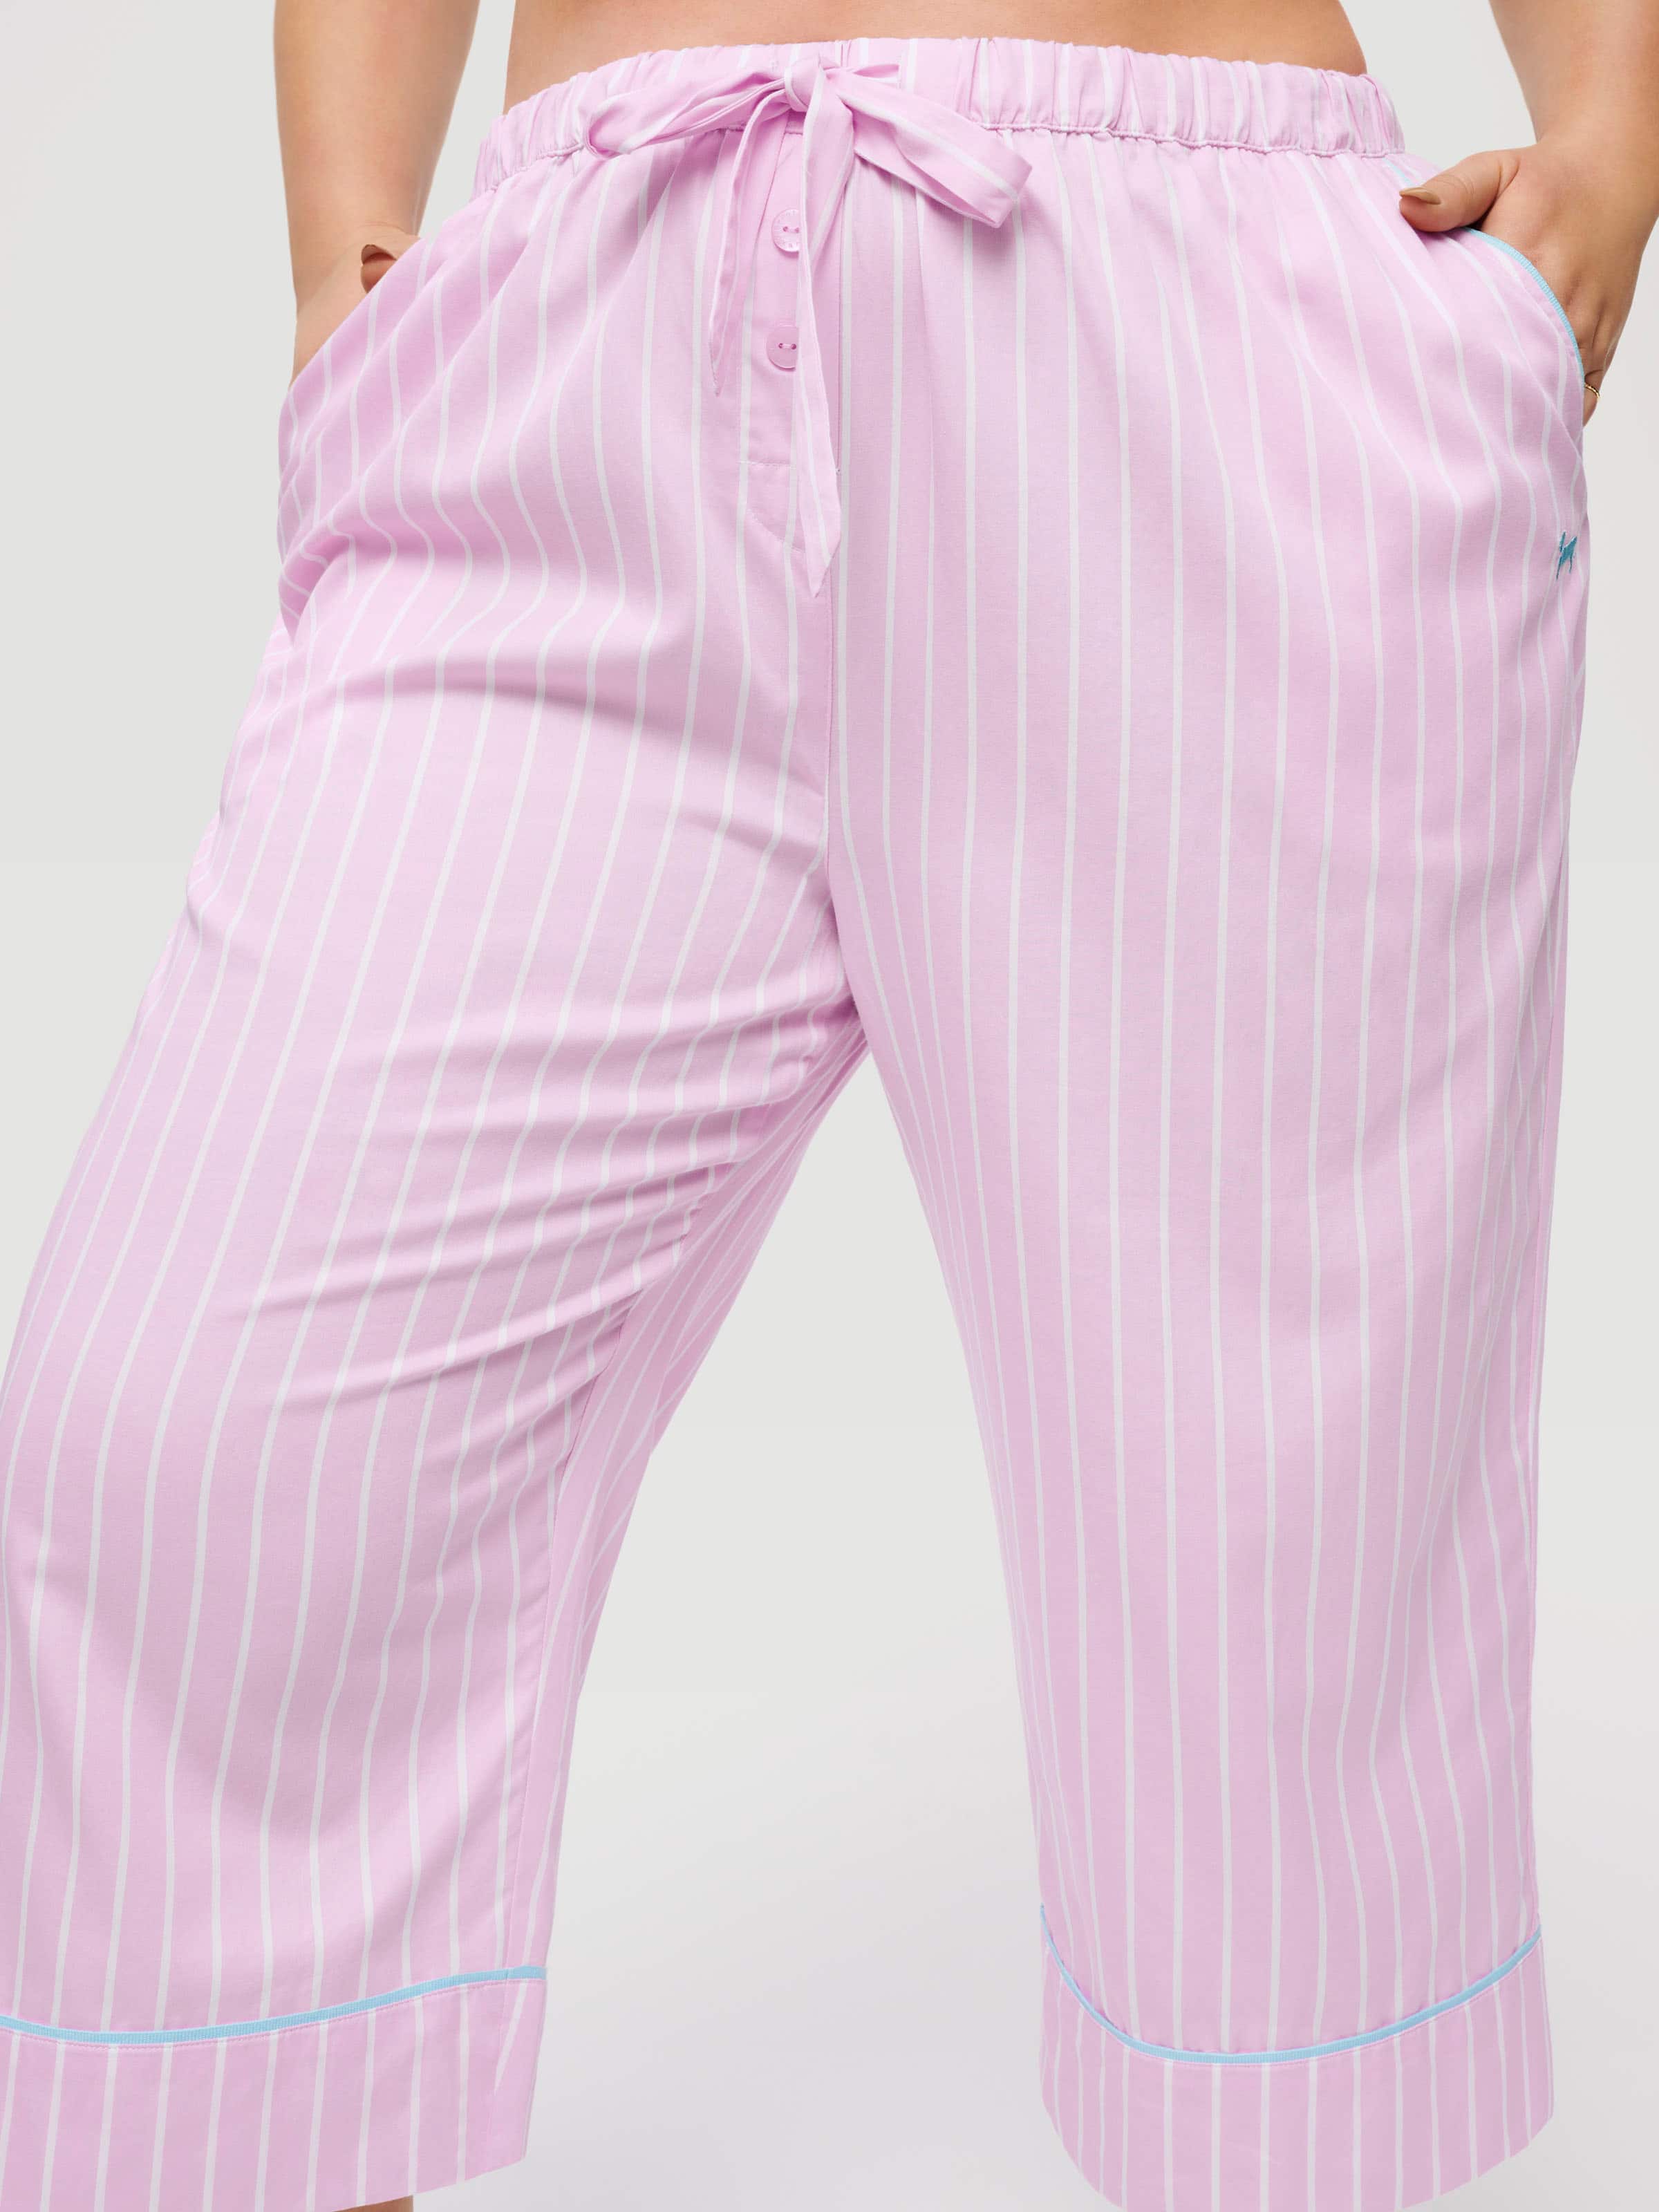 BedHead Pajamas Pink Stripe Pajama Pants  Striped pajama pants, Pink pajama  pants, Striped pyjamas